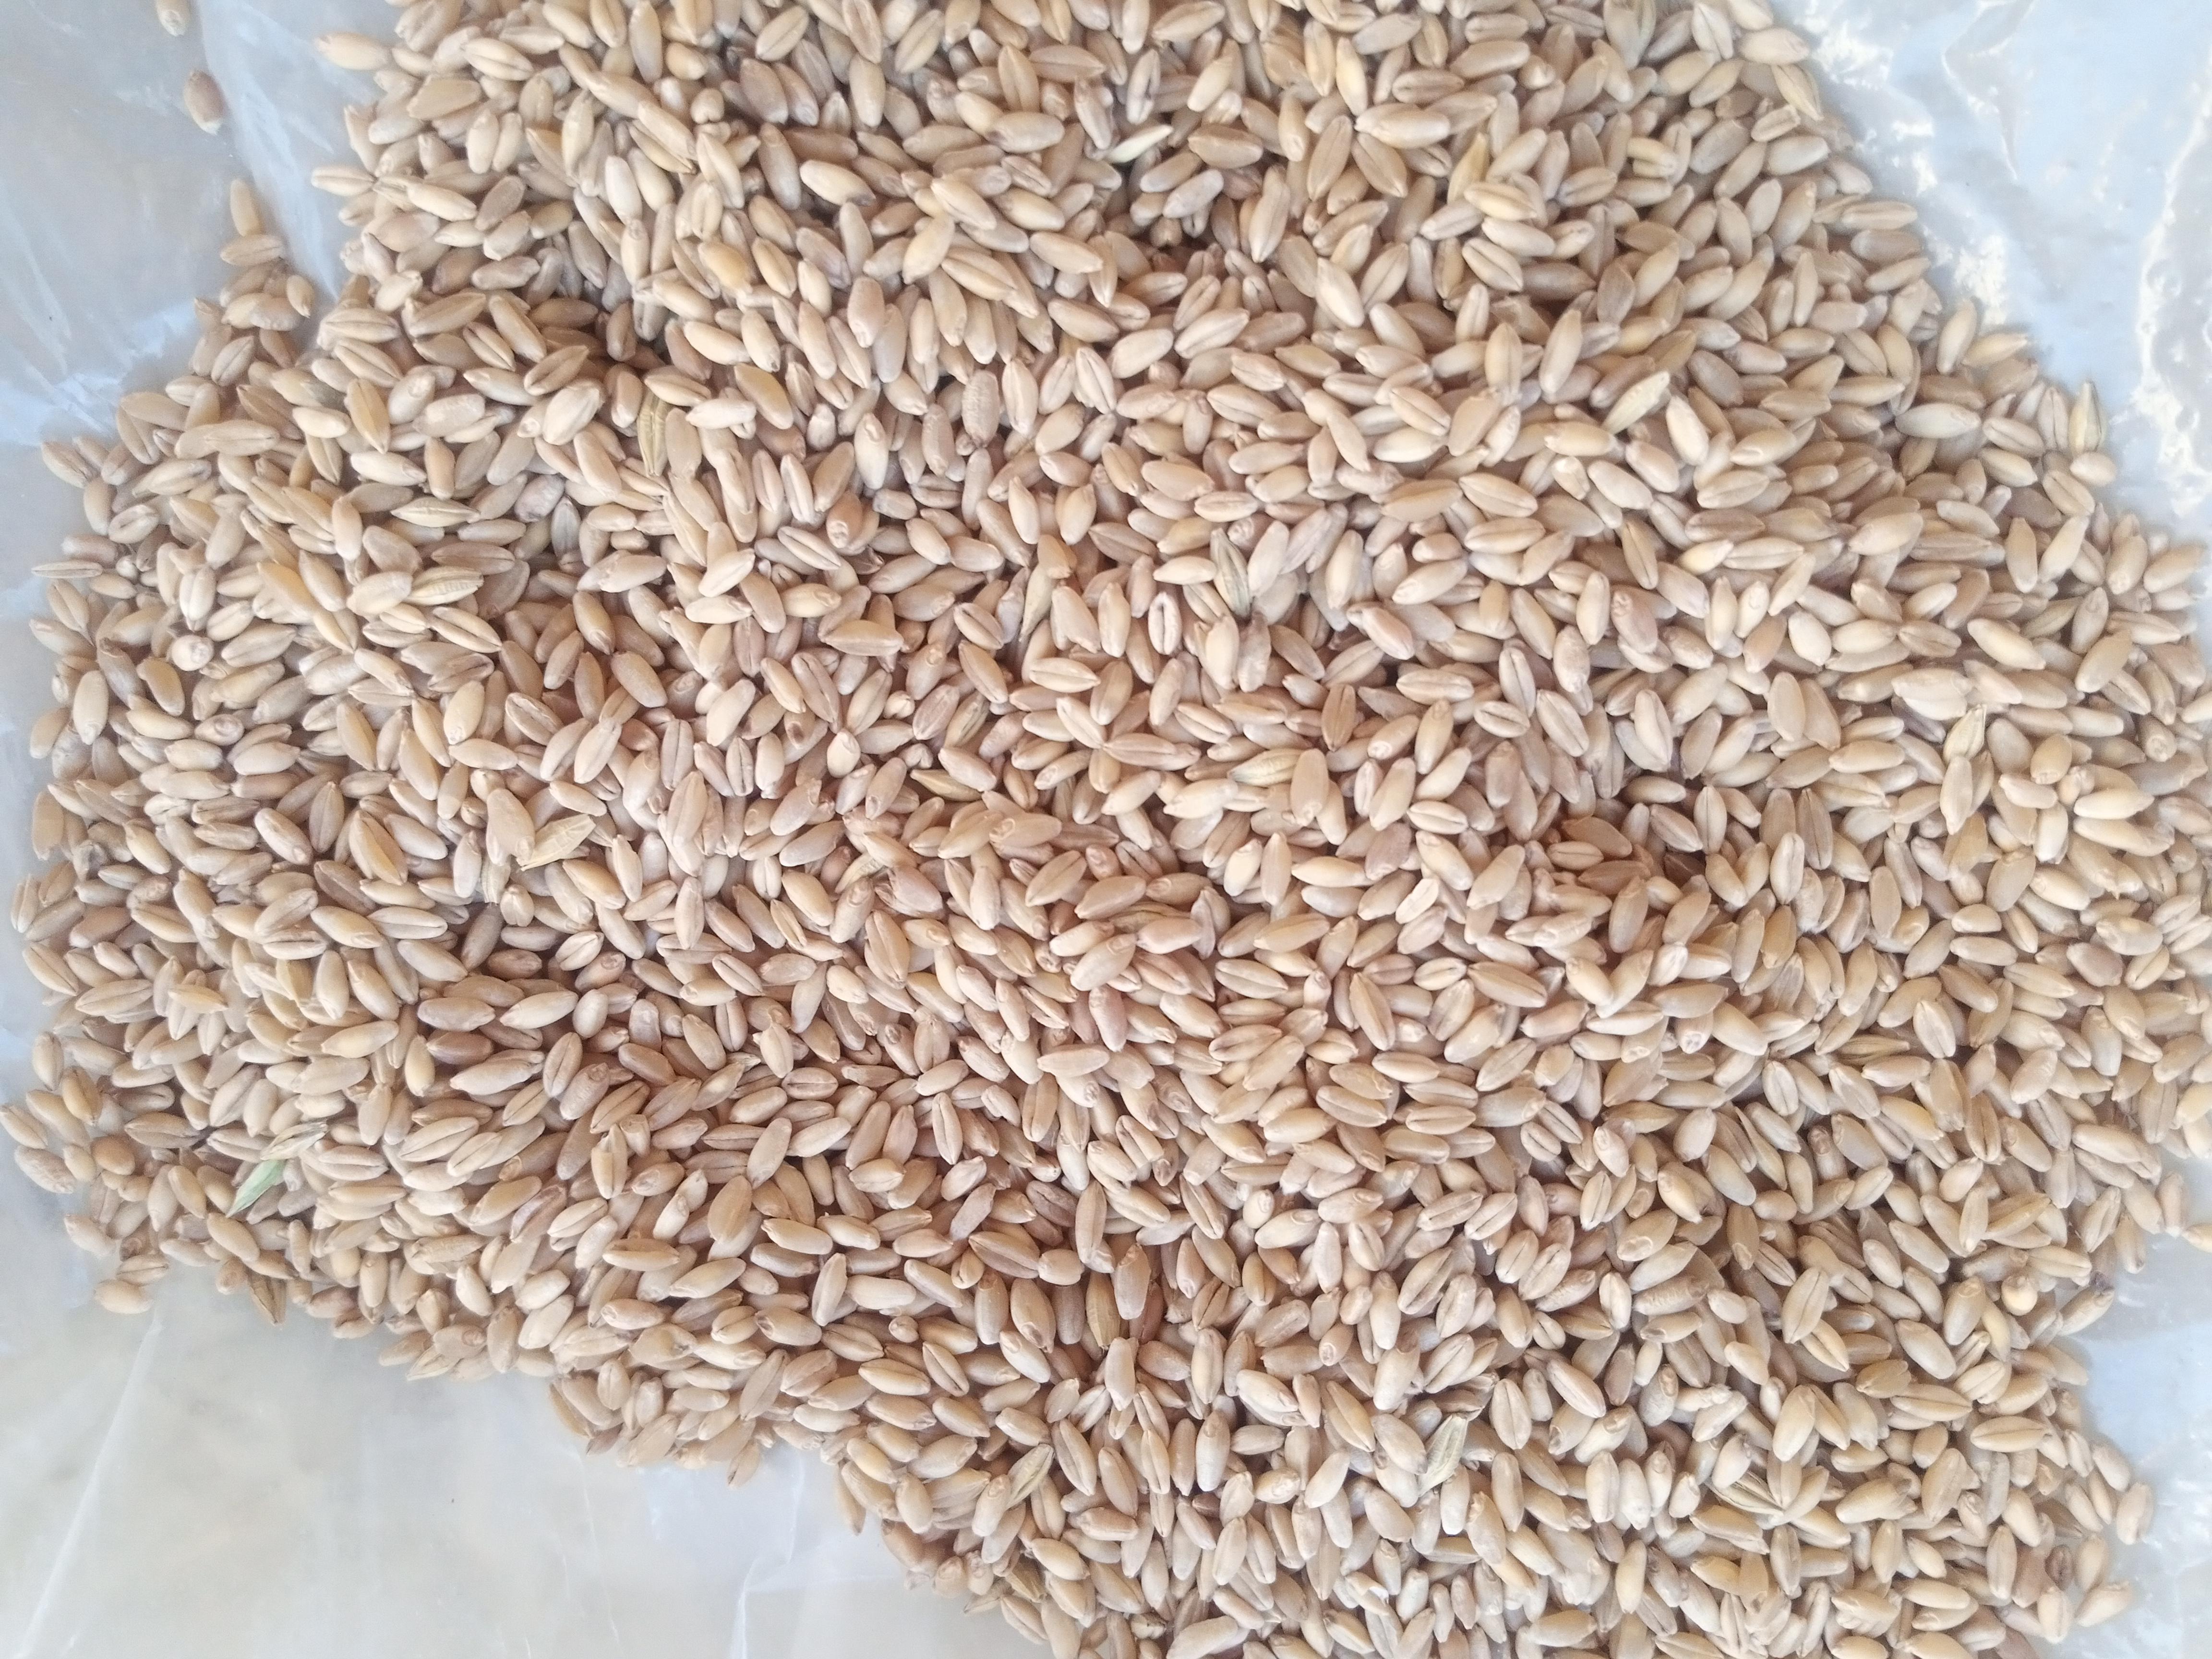 Buğday (Ekmeklik) - savaş barış tarafından verilen satılık buğday (ekmeklik) ilanını ve diğer satılık buğday (ekmeklik) ilanlarını tarimziraat.com adresinde bulabilirsiniz